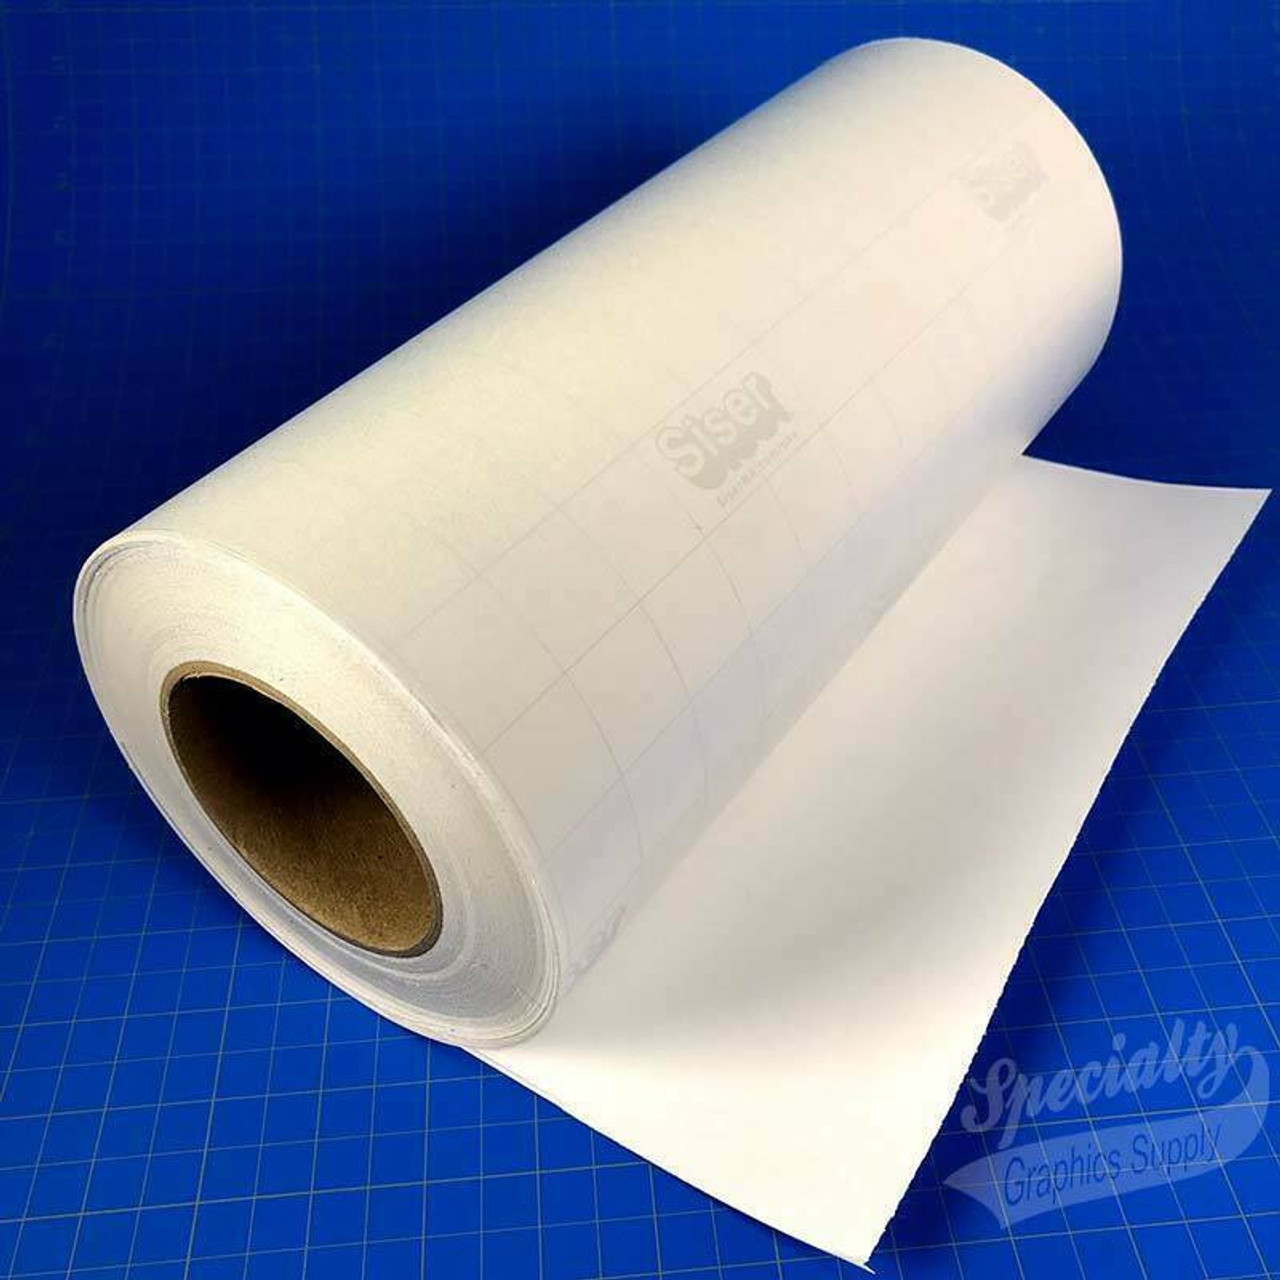 10 x 10 - Tissue Paper - 960 Pk